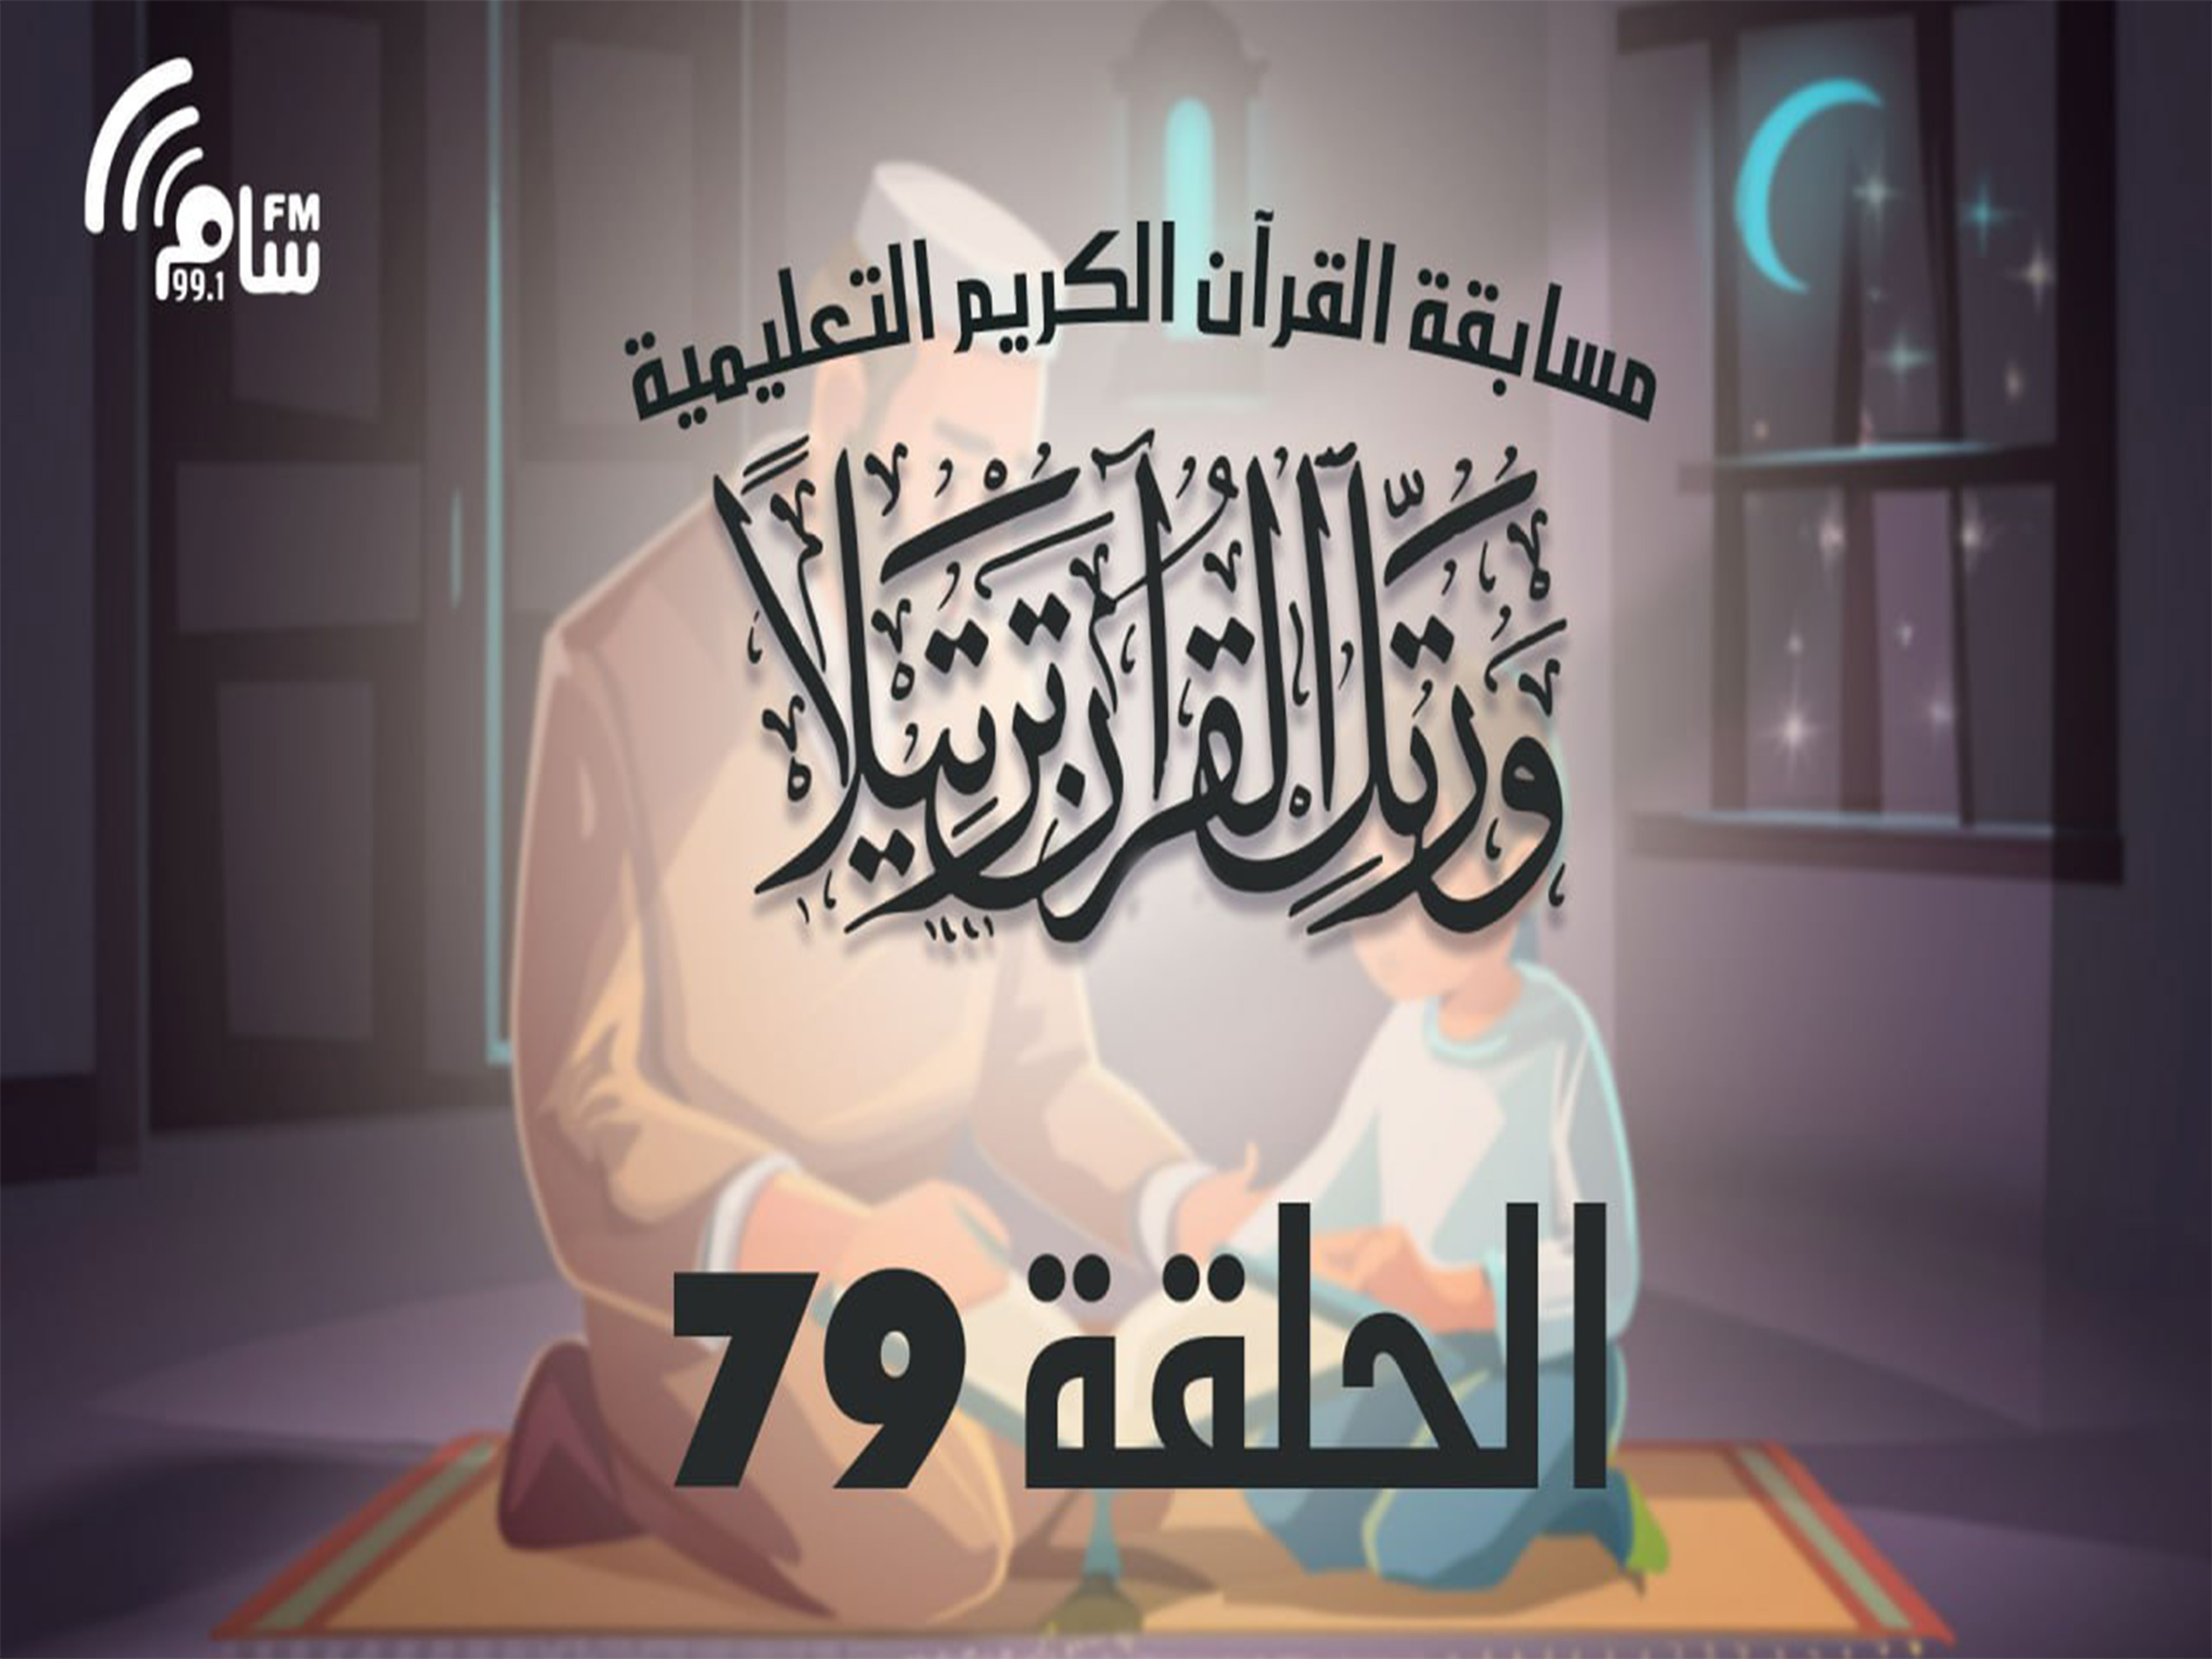 مسابقة القرآن الكريم الحلقة 79 انتاج اذاعة اسام اف ام